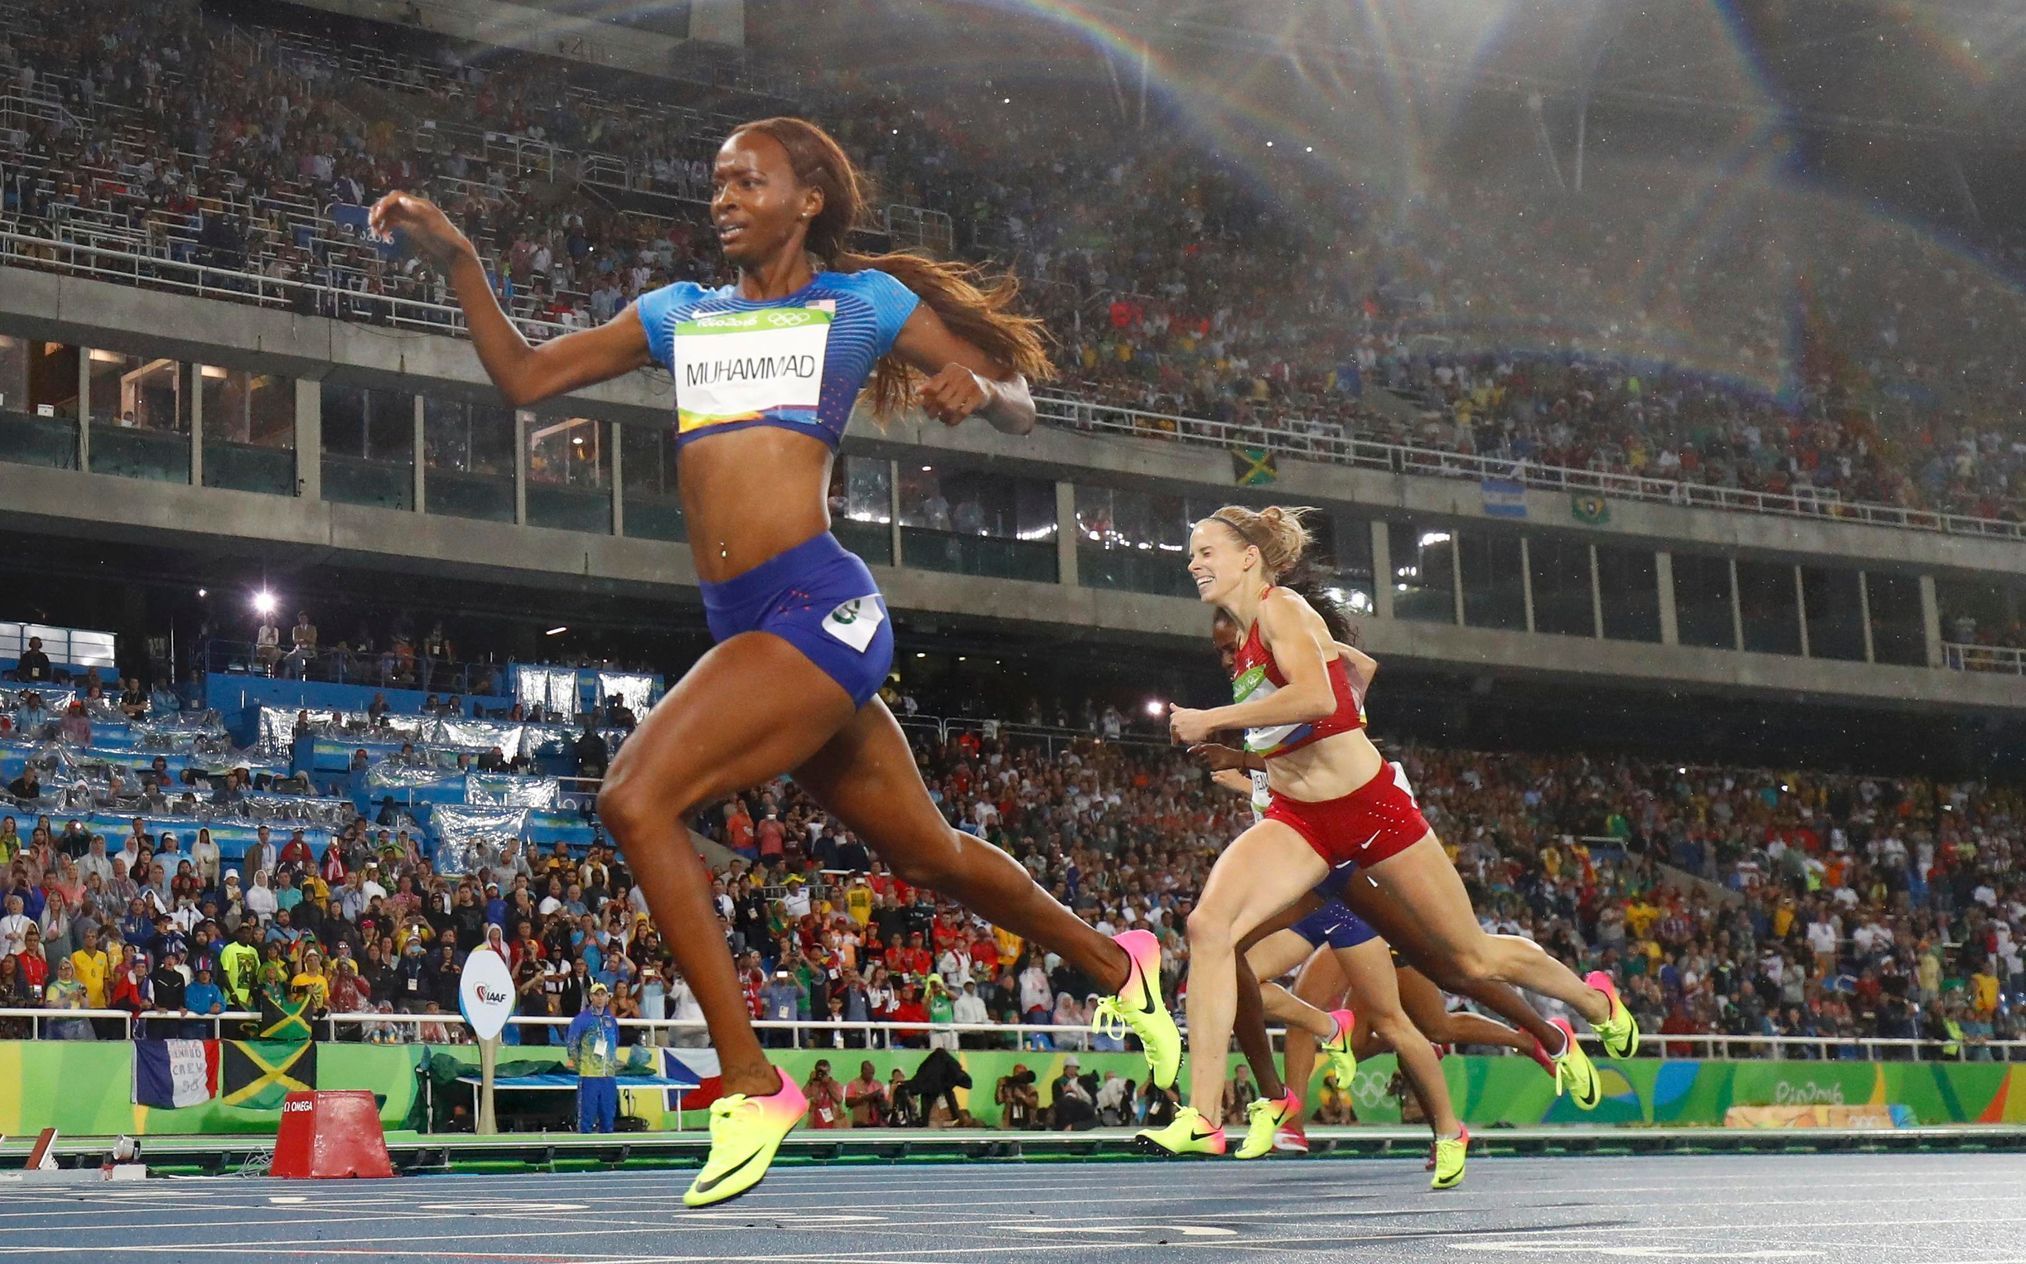 OH 2016, atletika-400 m př. Ž: Dalilah Muhammadová, USA